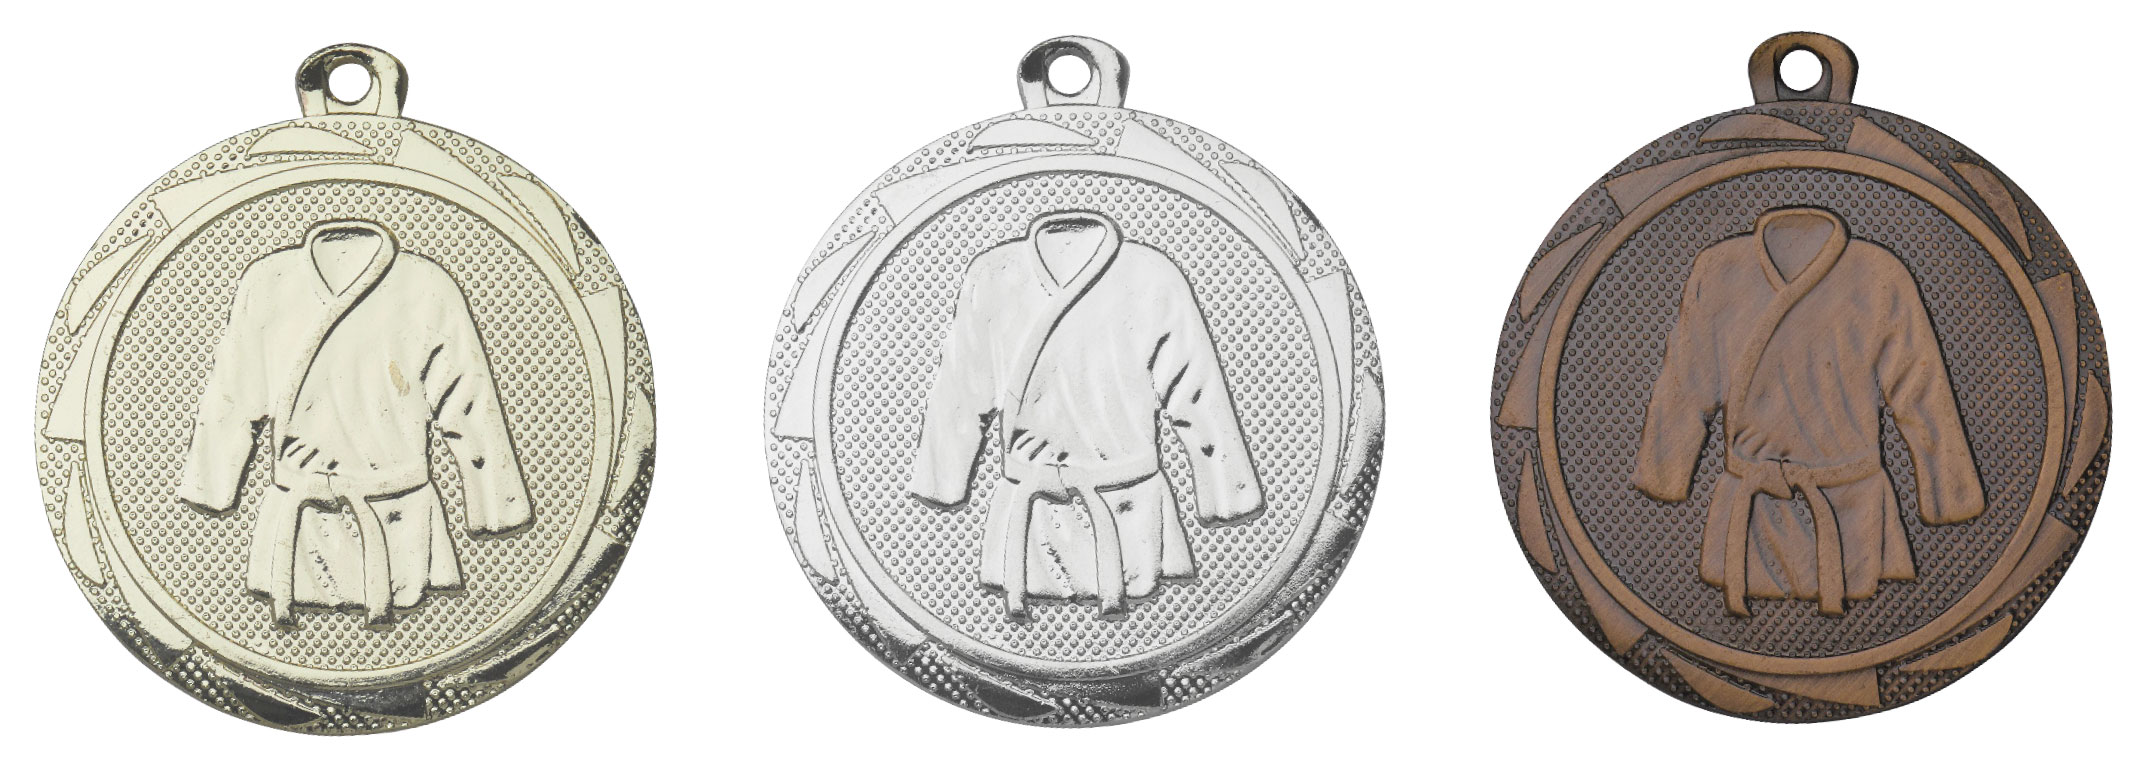 Medaille "Kampfsport" mit Kranz